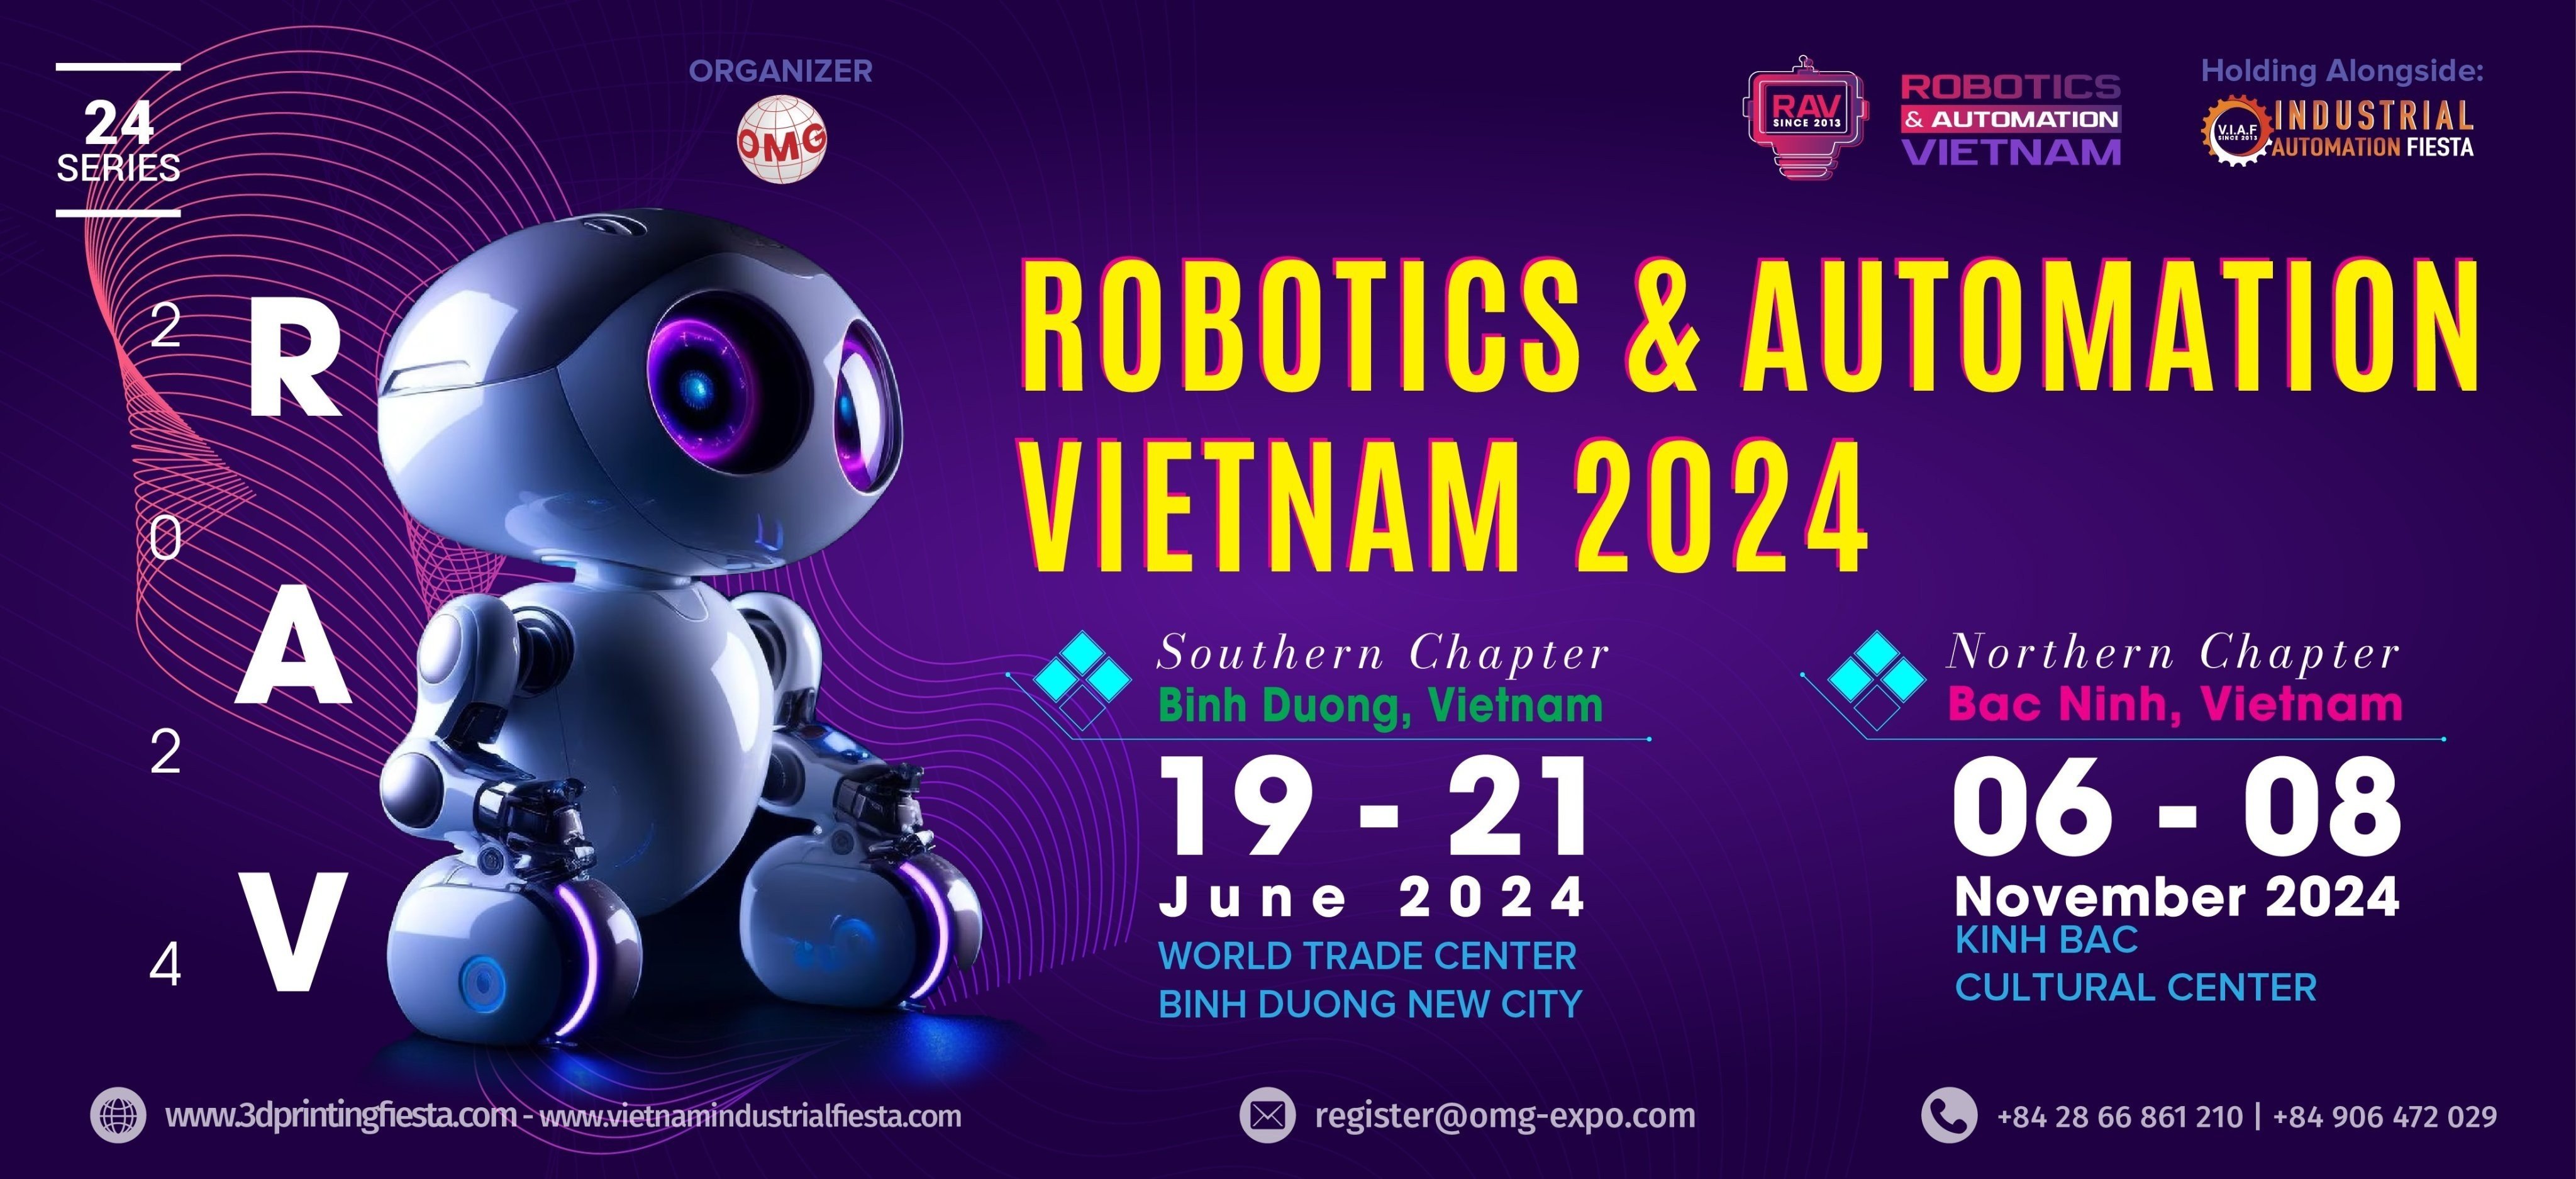 RAV- ROBOTIC & AUTOMATION VIETNAM 2024